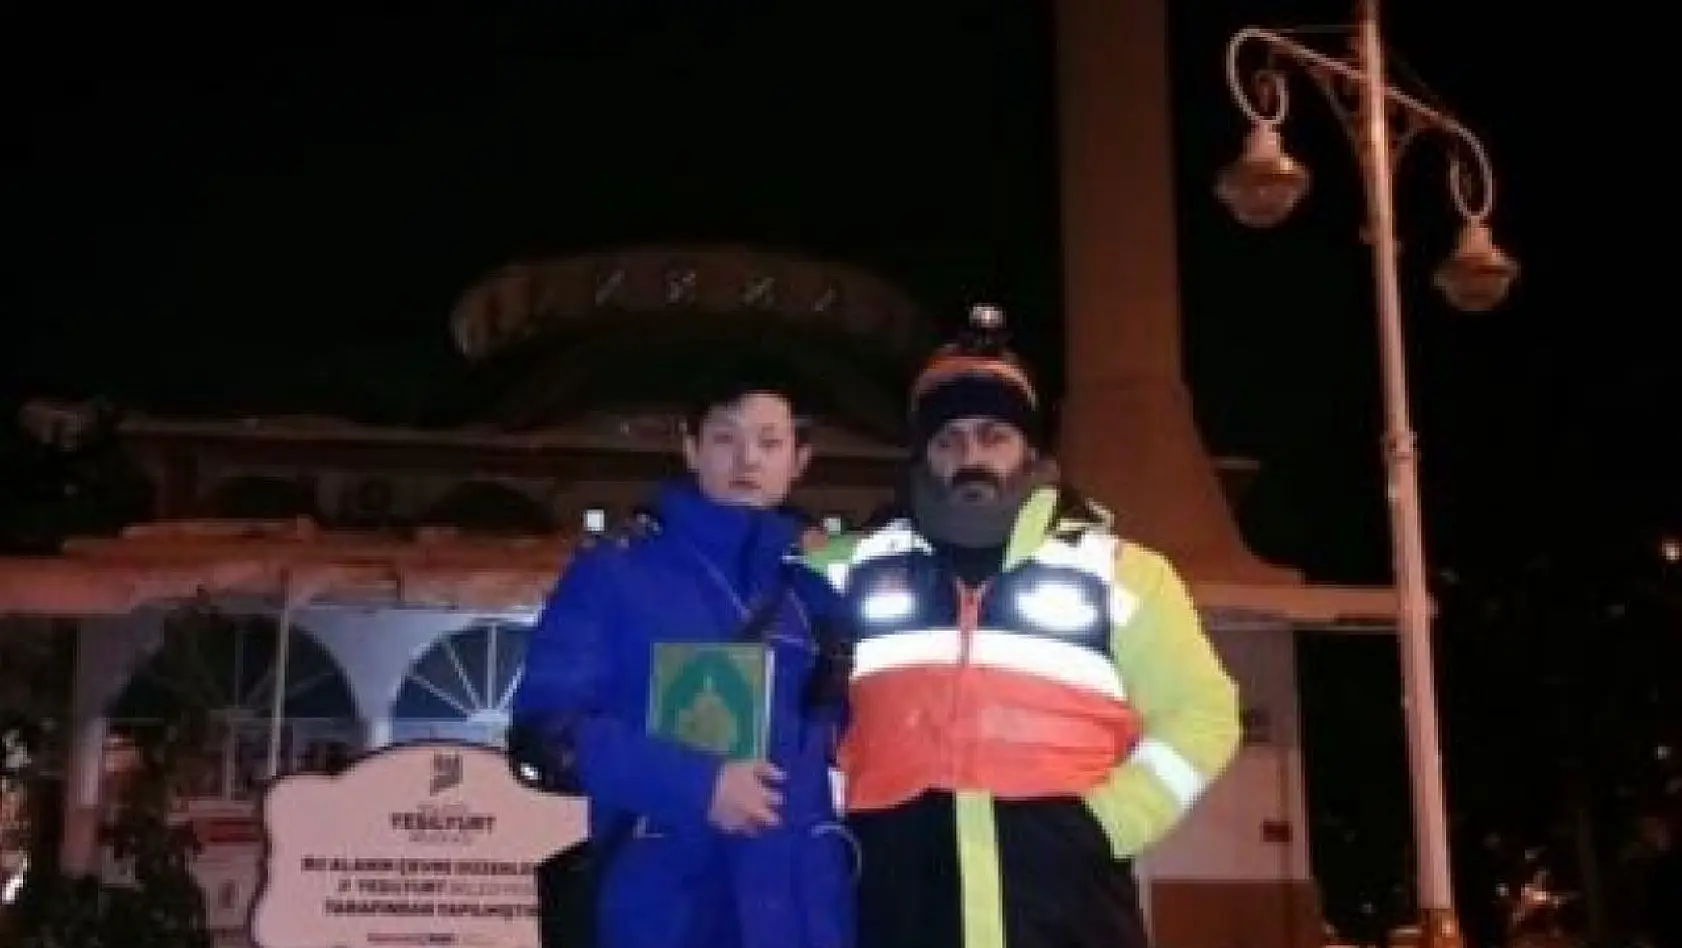 Müslüman olan Çinli kurtarma görevlisi barınma merkezi olarak kullanılan camiye 500 yuan bağışladı